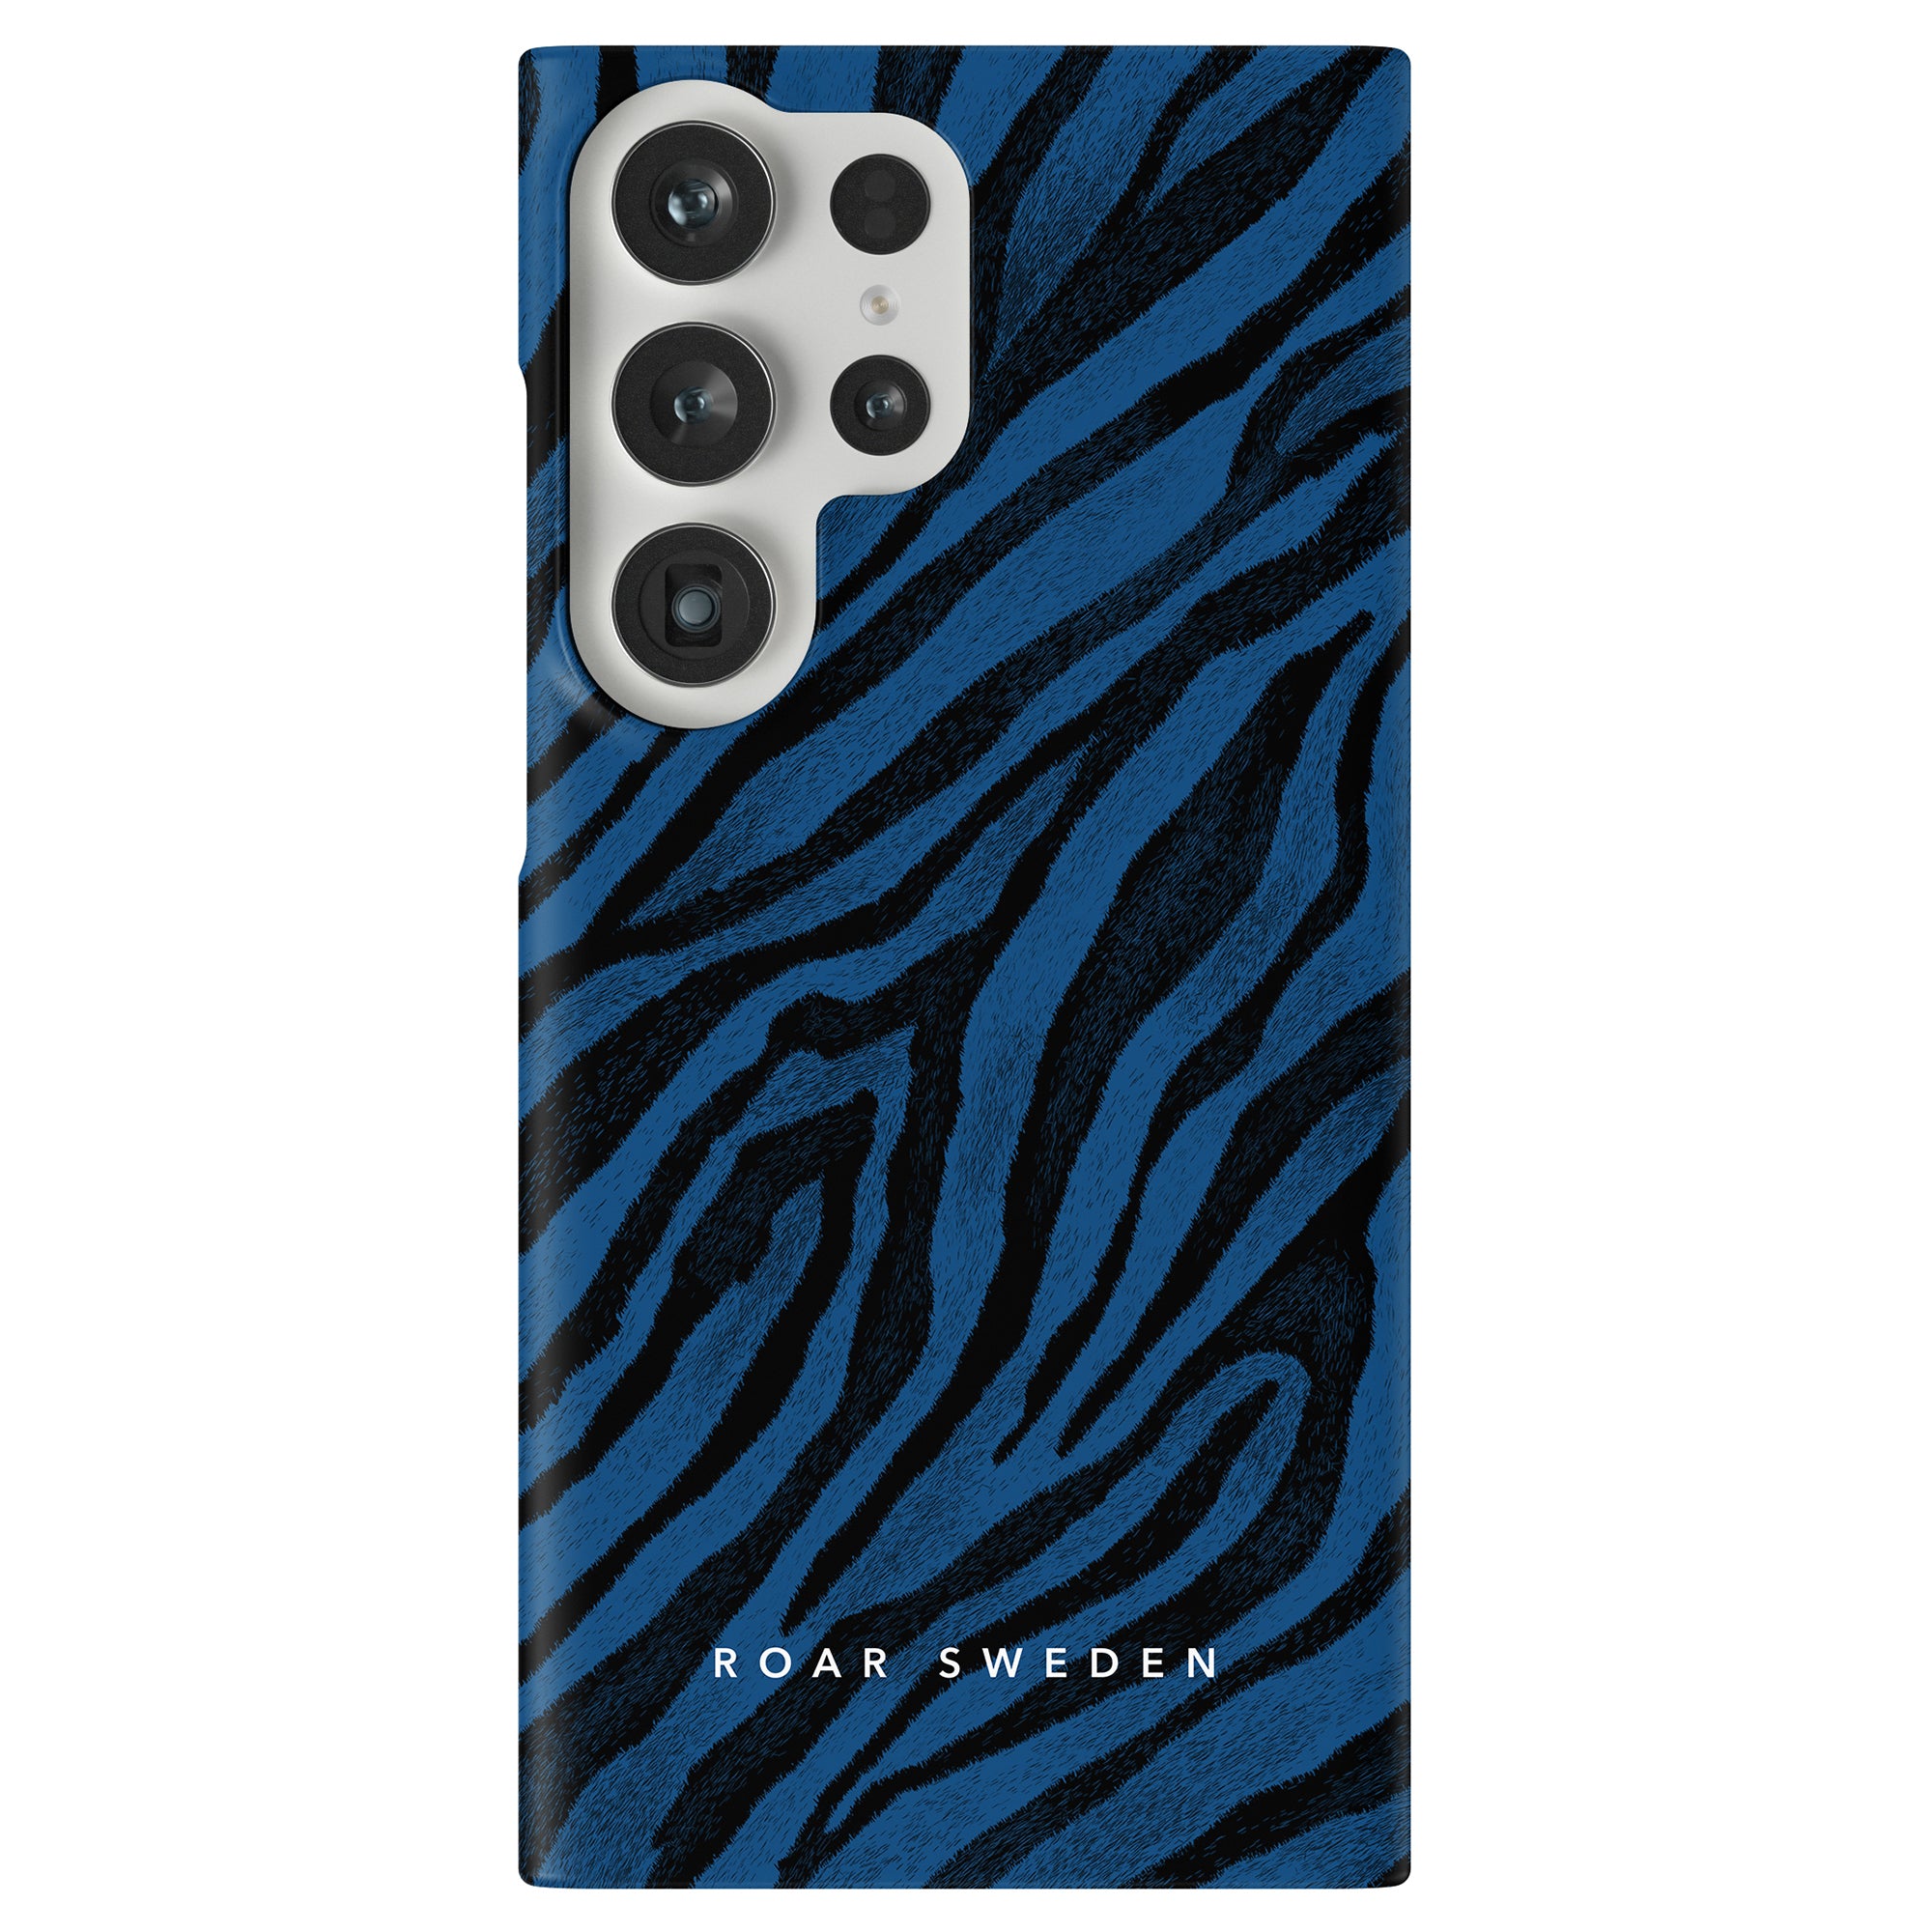 Ett blått och svart zebrainspirerat mönsterfodral, Printeers Rani Slim Case, för iPhone 11 pro.